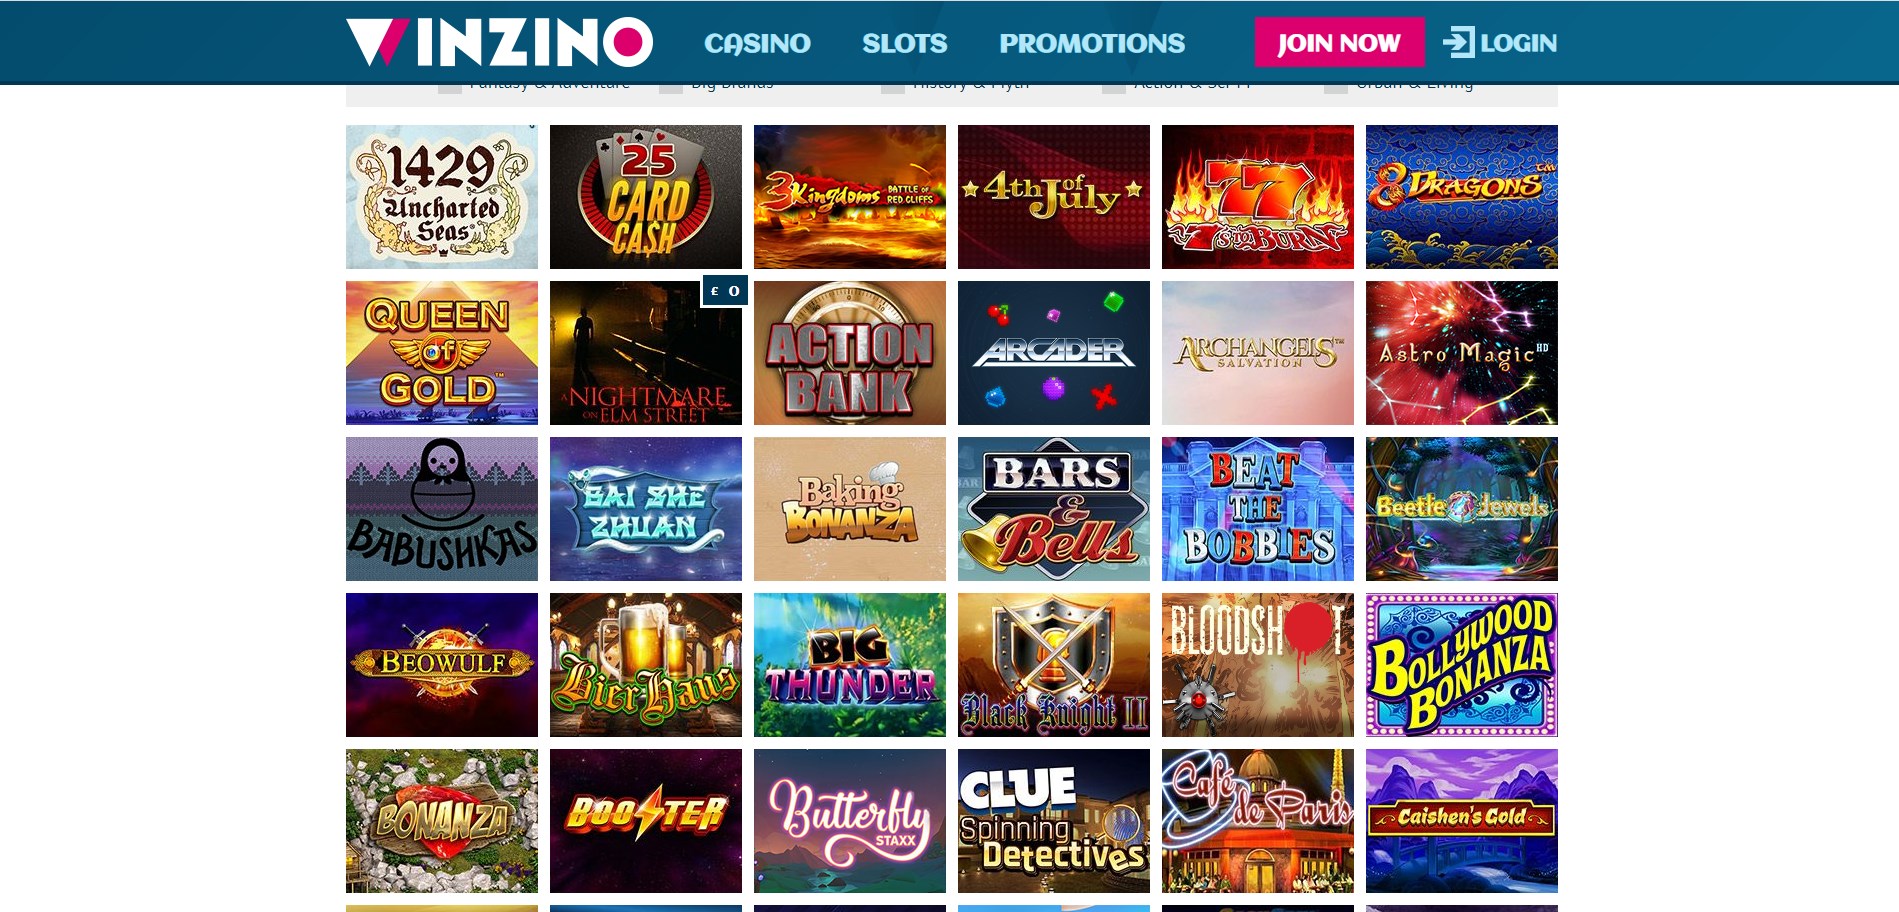 Winzino Casino Games